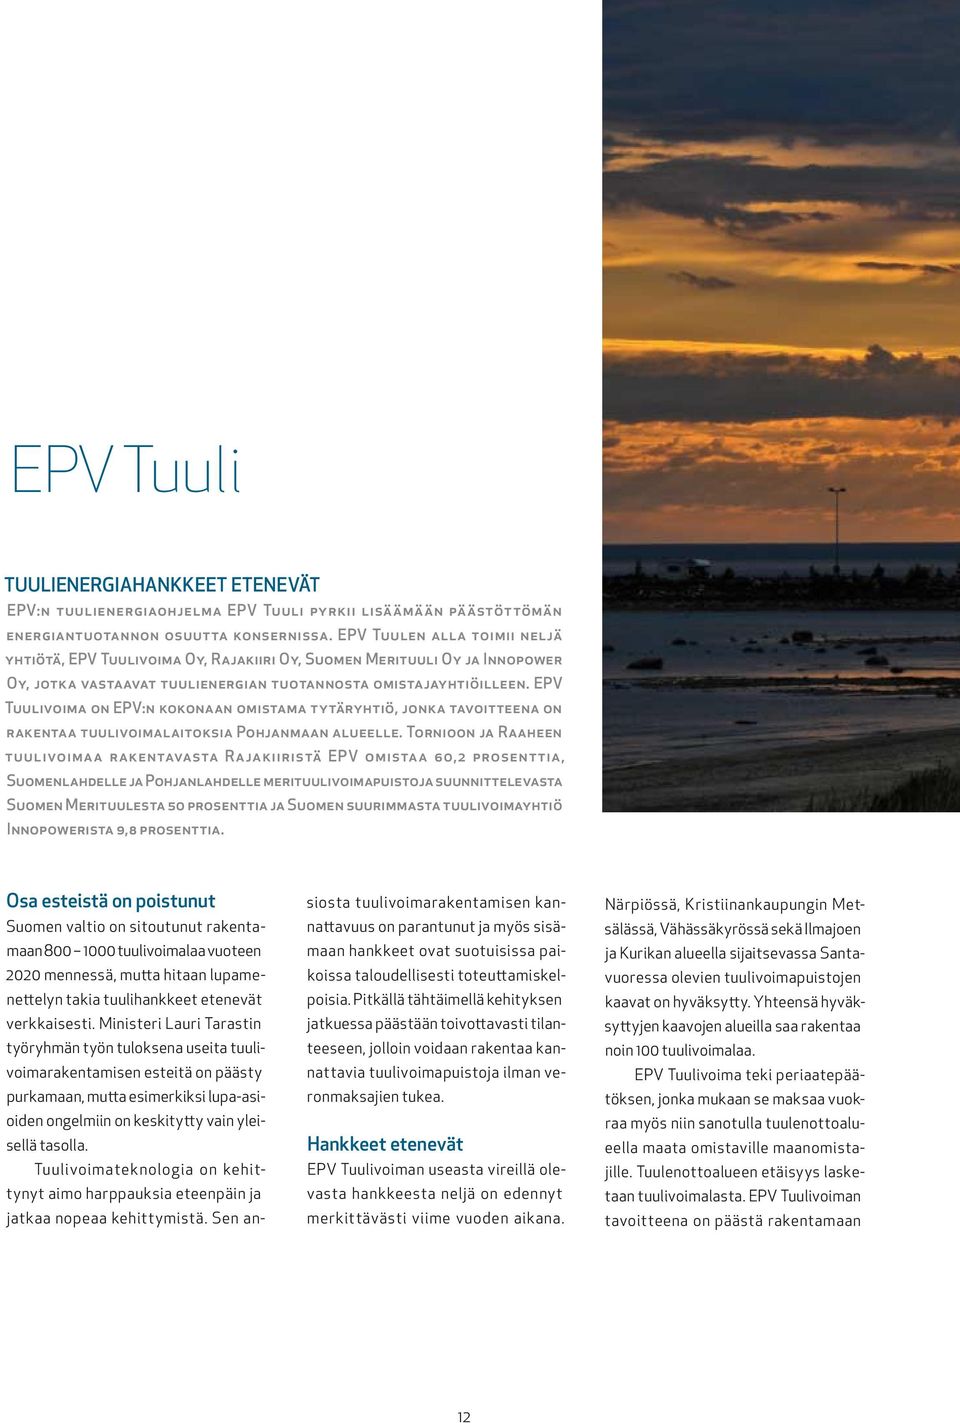 EPV Tuulivoima on EPV:n kokonaan omistama tytäryhtiö, jonka tavoitteena on rakentaa tuulivoimalaitoksia Pohjanmaan alueelle.